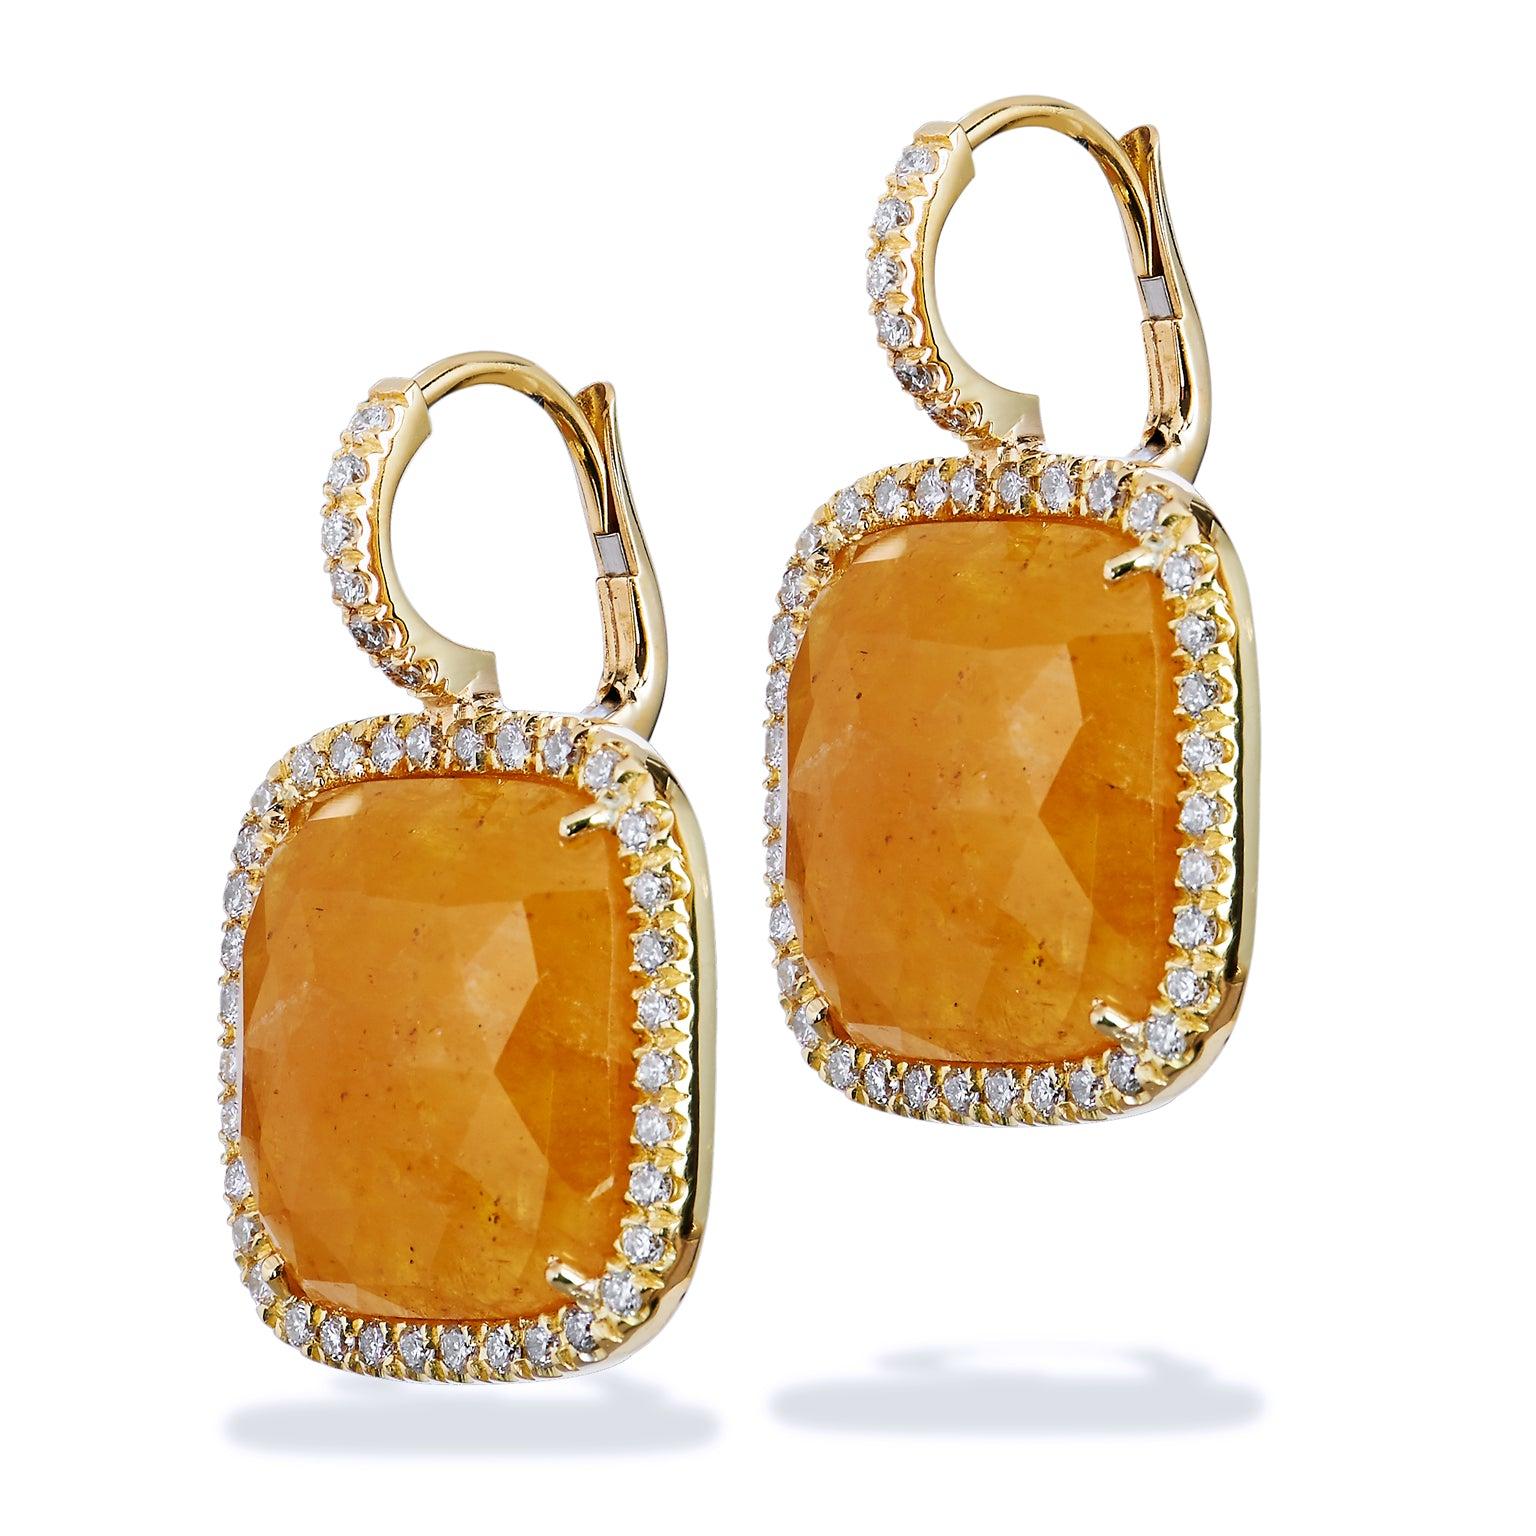 Diese absolut atemberaubenden Ohrringe mit gelben Saphiren und Diamanten im Kissenschliff sind in Handarbeit aus 18 Karat Gelbgold gefertigt. Sie sind mit 13,58 Karat gelben Saphiren besetzt. 

Diese sind handgefertigt und einmalig. 

 


